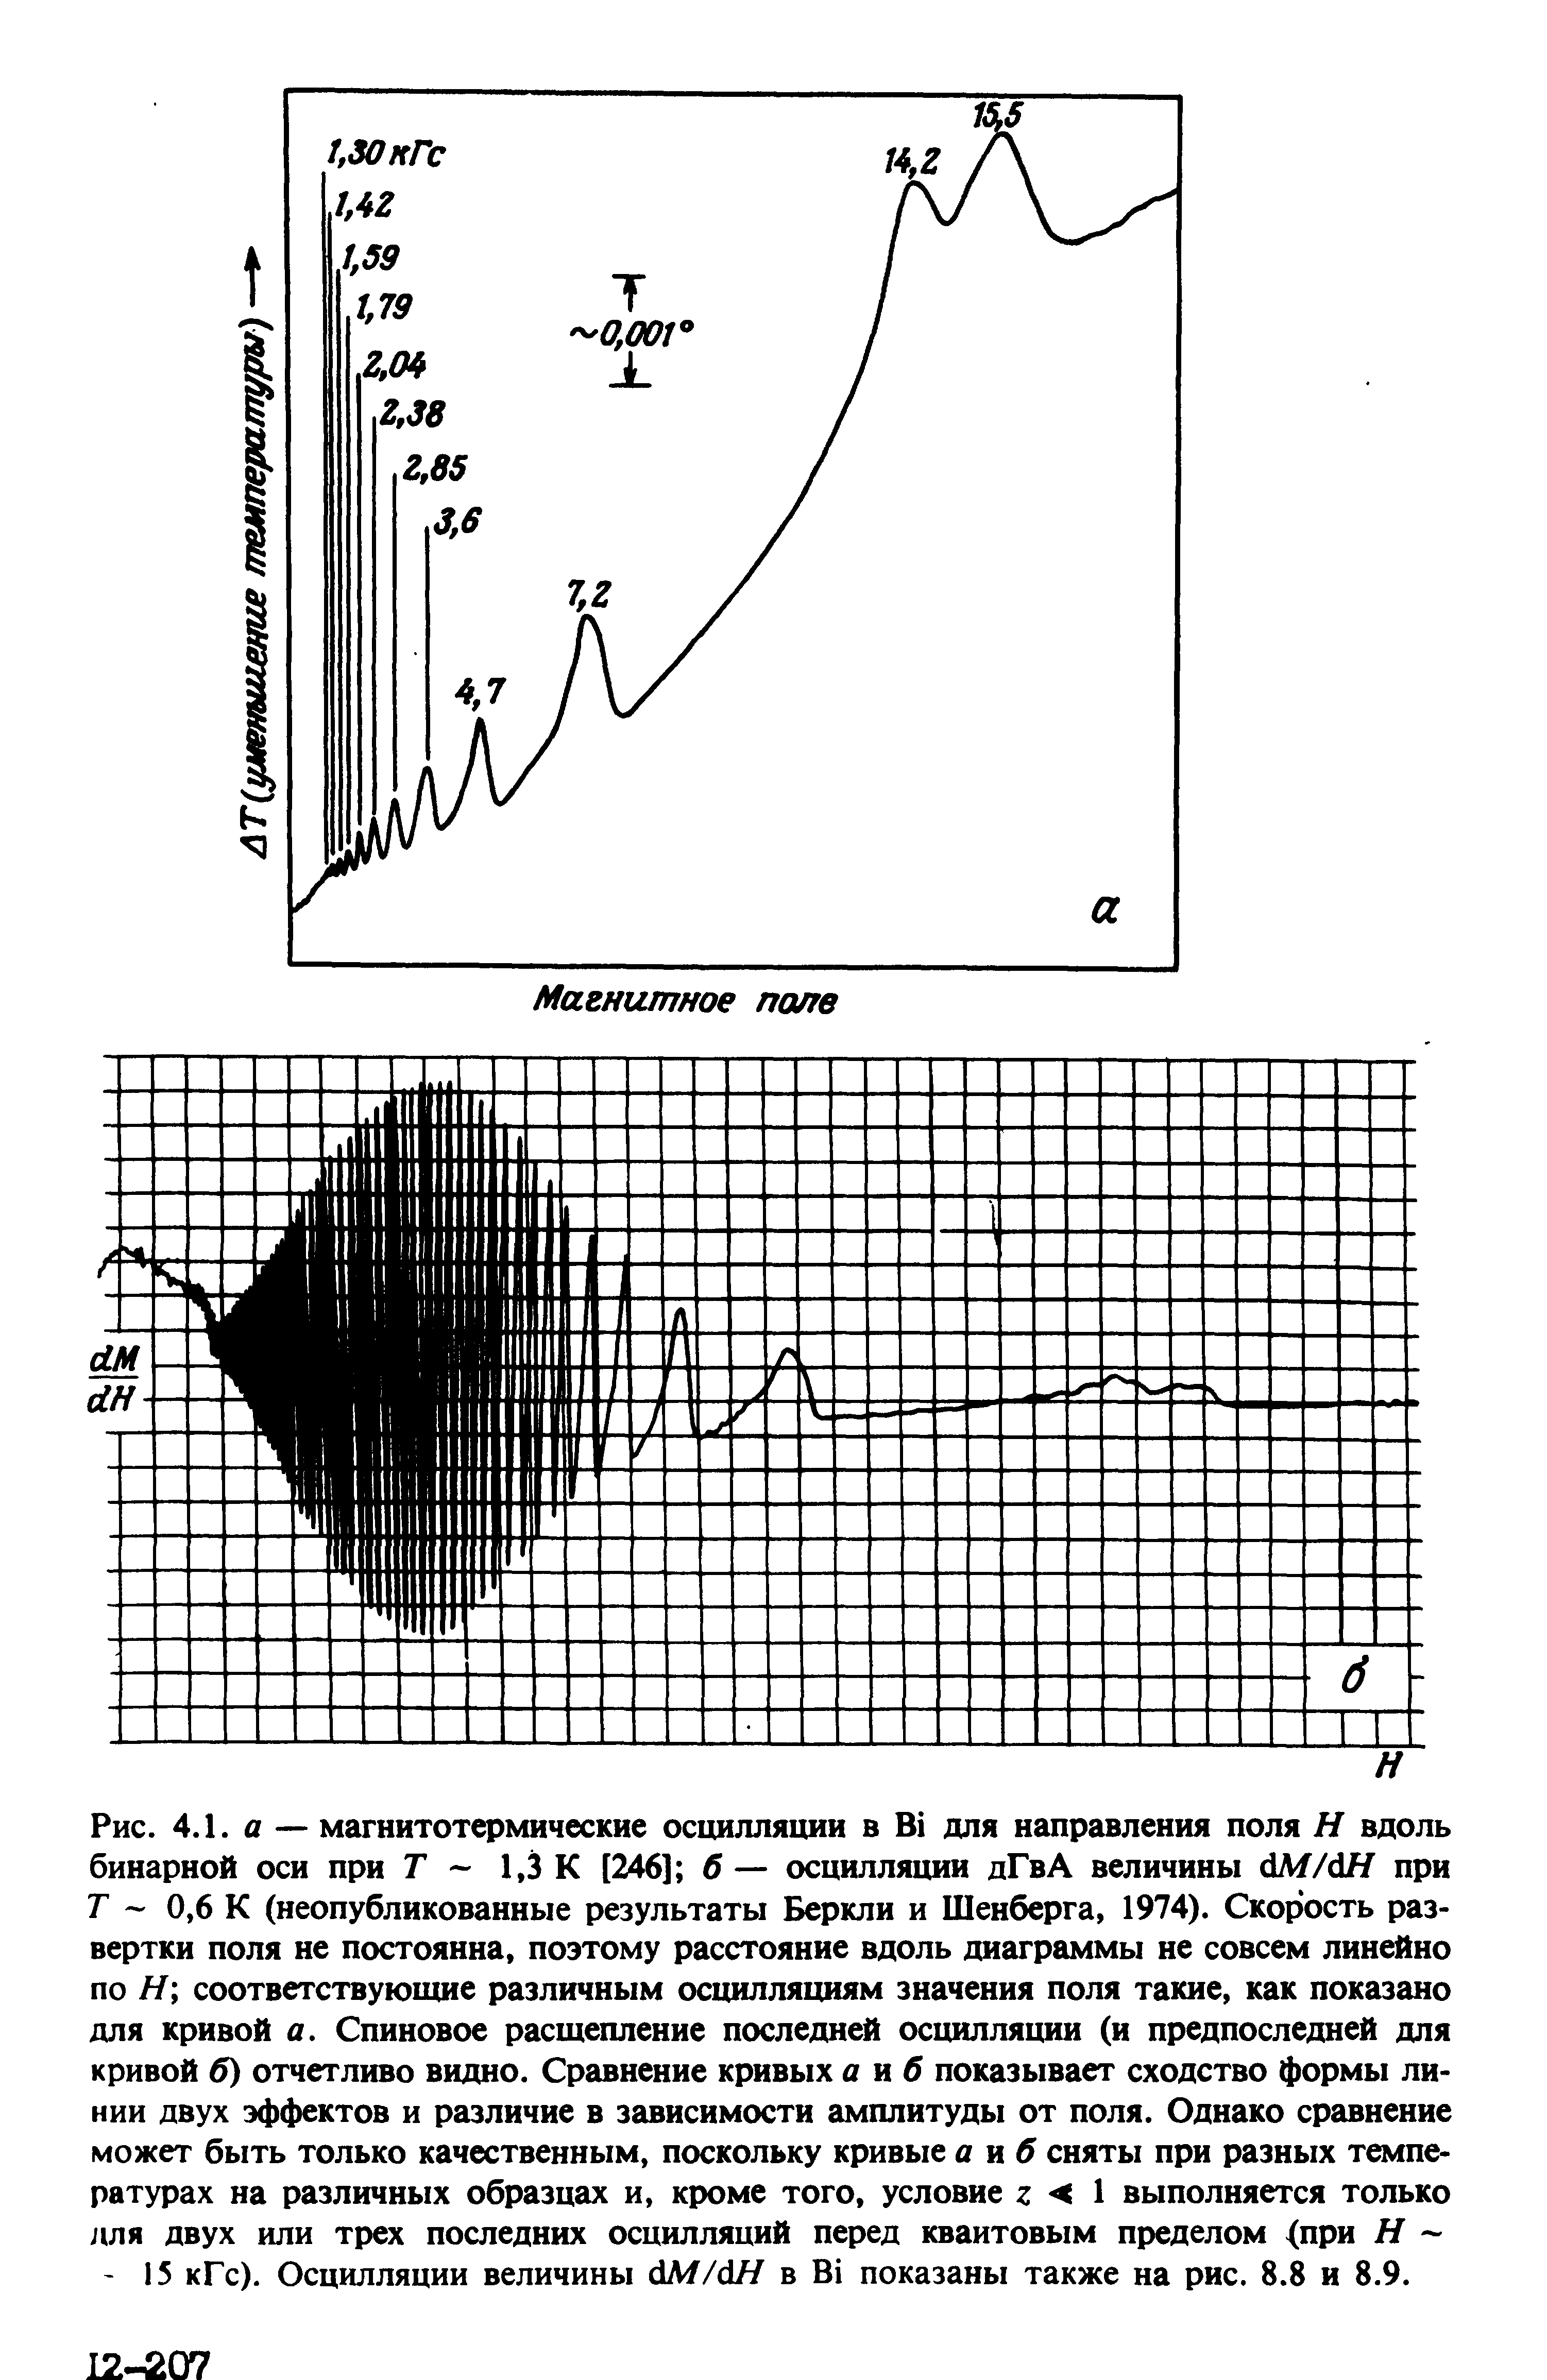 Рис. 4.1. А — магнитотермические осцилляции в В для <a href="/info/19231">направления поля</a> Н вдоль бинарной оси при Г 1,3 К [246] б — осцилляции дГвА величины М/дН при Г - 0,6 К (неопубликованные результаты Беркли и Шенберга, 1974). <a href="/info/462993">Скорость развертки</a> поля не постоянна, поэтому расстояние вдоль диаграммы не совсем линейно по Я соответствующие различным осцилляциям значения поля такие, как показано для кривой а. Спиновое расщепление последней осцилляции (и предпоследней для кривой б) отчетливо видно. <a href="/info/8110">Сравнение кривых</a> а иб показывает сходство формы ли< НИИ двух эффектов и различие в зависимости амплитуды от поля. Однако сравнение может быть только качественным, поскольку кривые а яб сняты при разных температурах на различных образцах и, кроме того, условие г < I выполняется только для двух или трех последних осцилляций перед квантовым пределом <при Я 15 кГс). Осцилляции величины с1М/с1Я в В показаны также на рис. 8.8 и 8.9.
